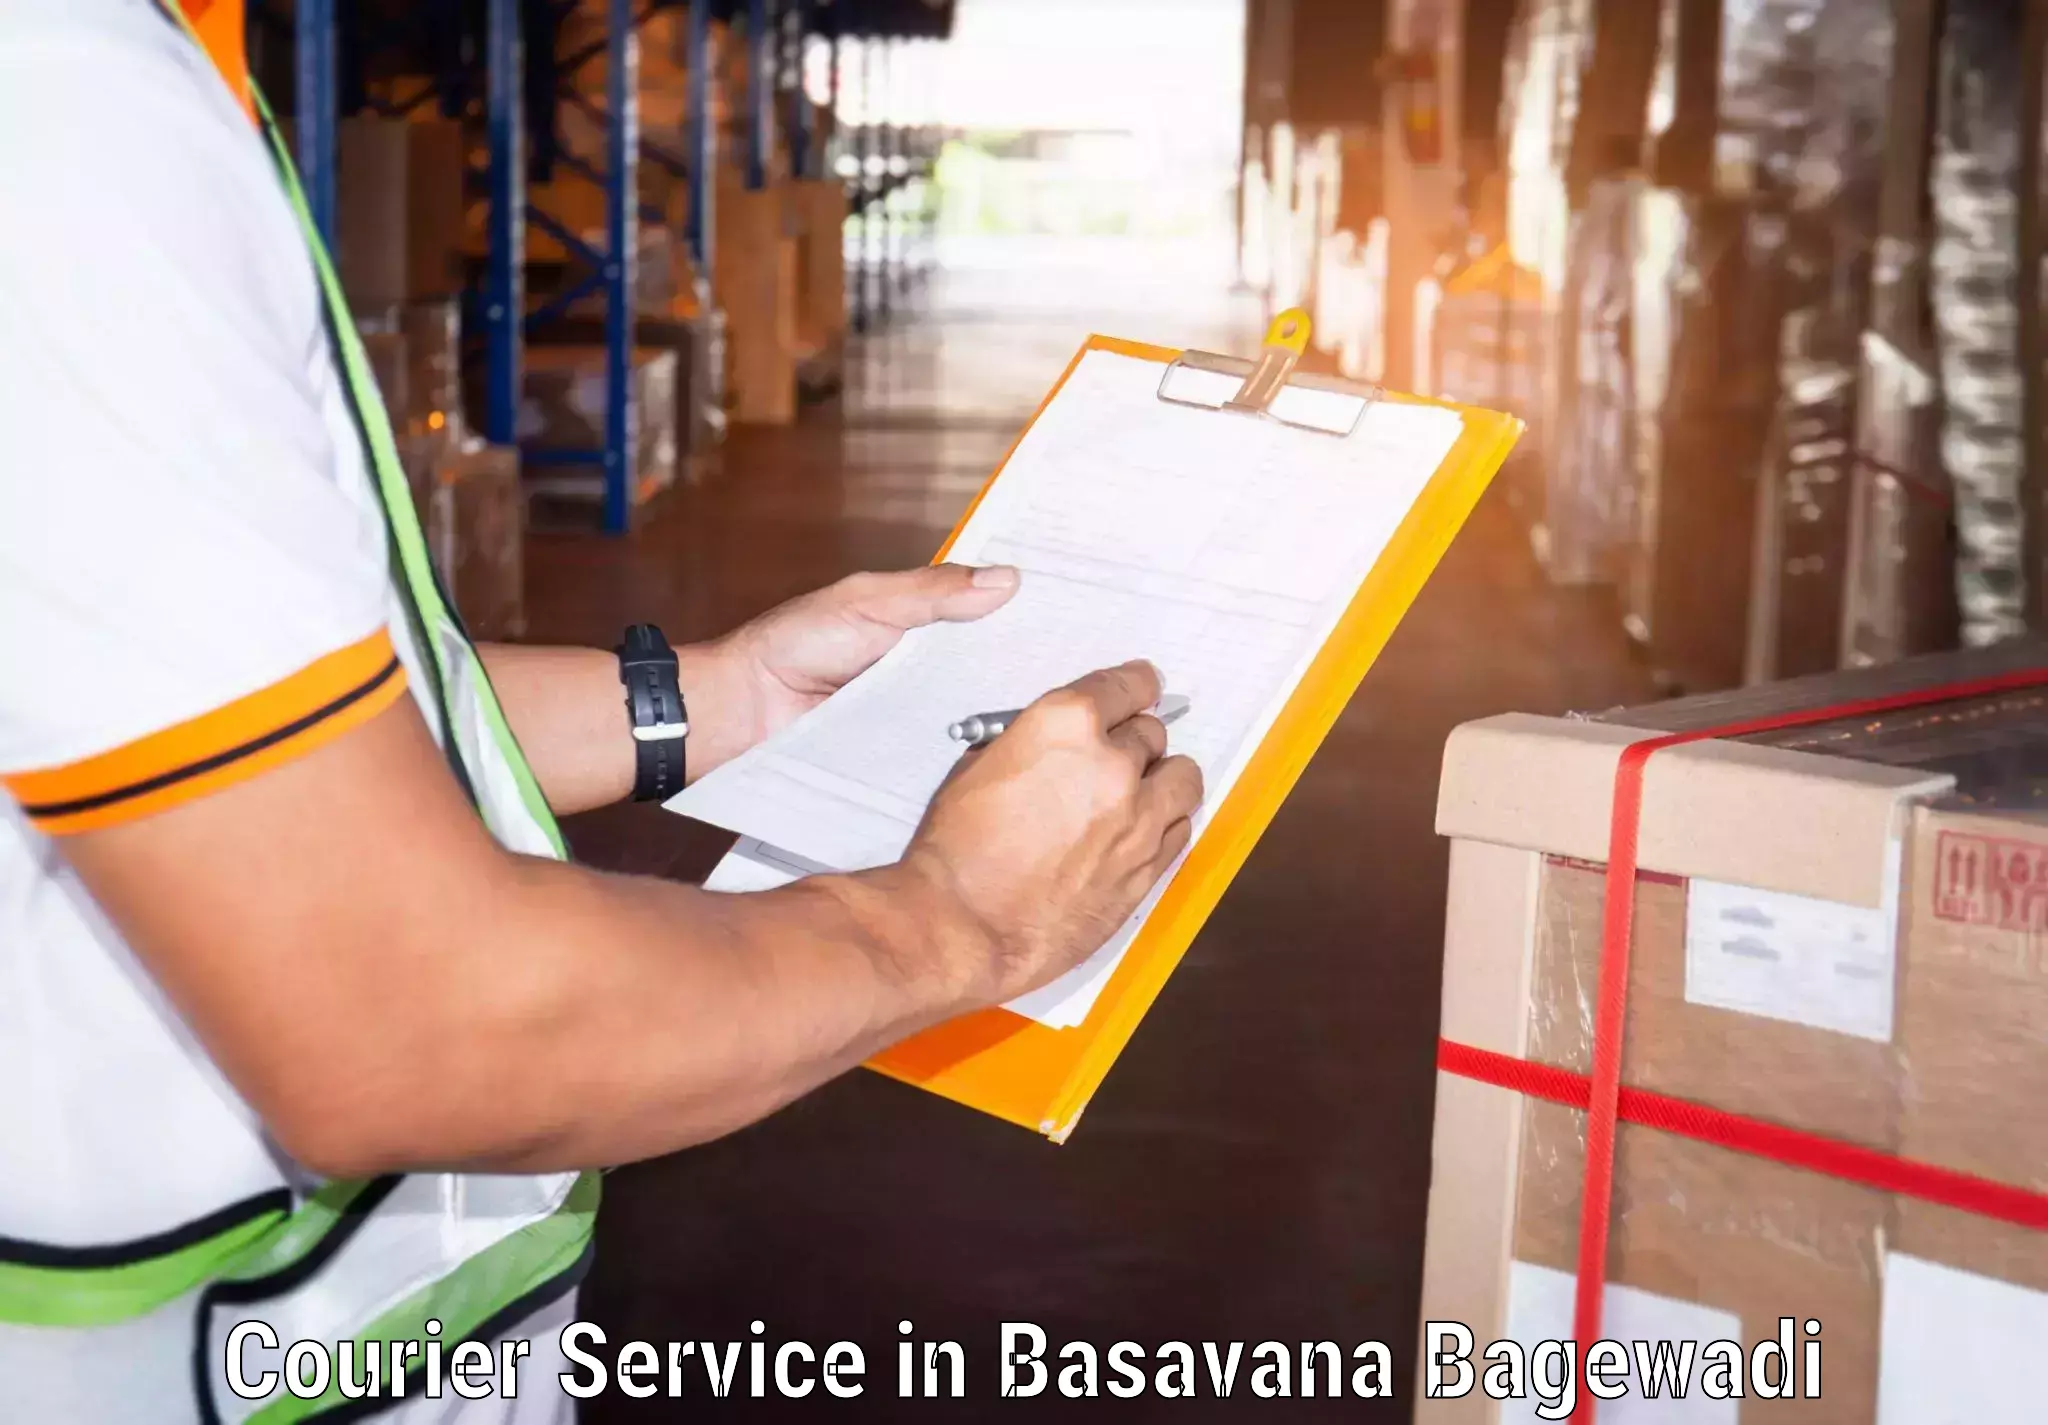 Express postal services in Basavana Bagewadi